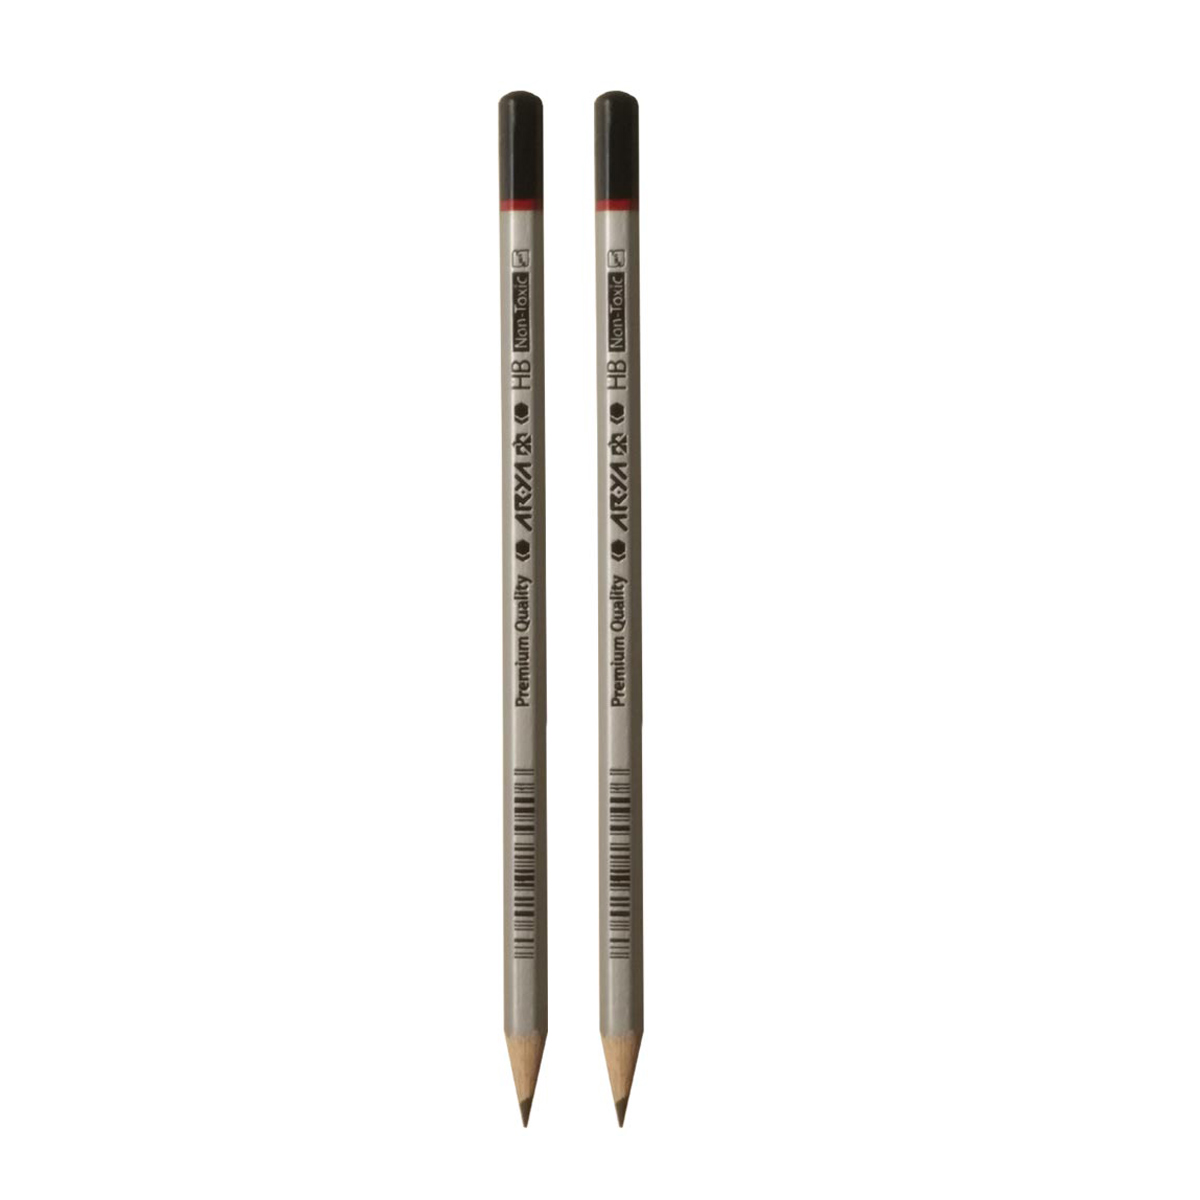 مداد مشکی آریا مدل Premium Quality کد 3050 بسته 2 عددی